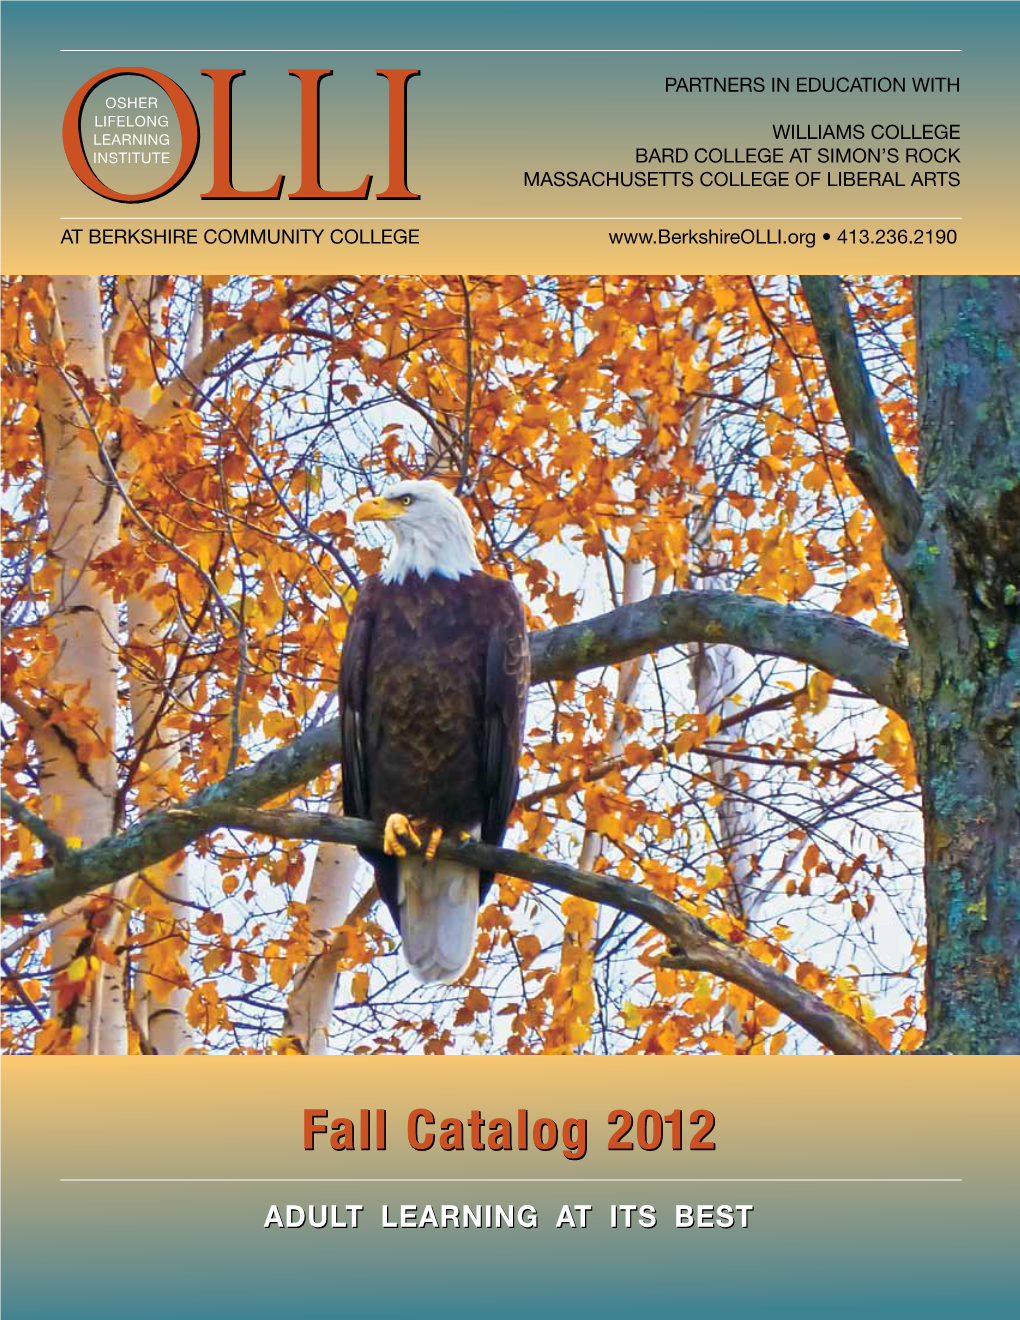 Fall Catalog 2012